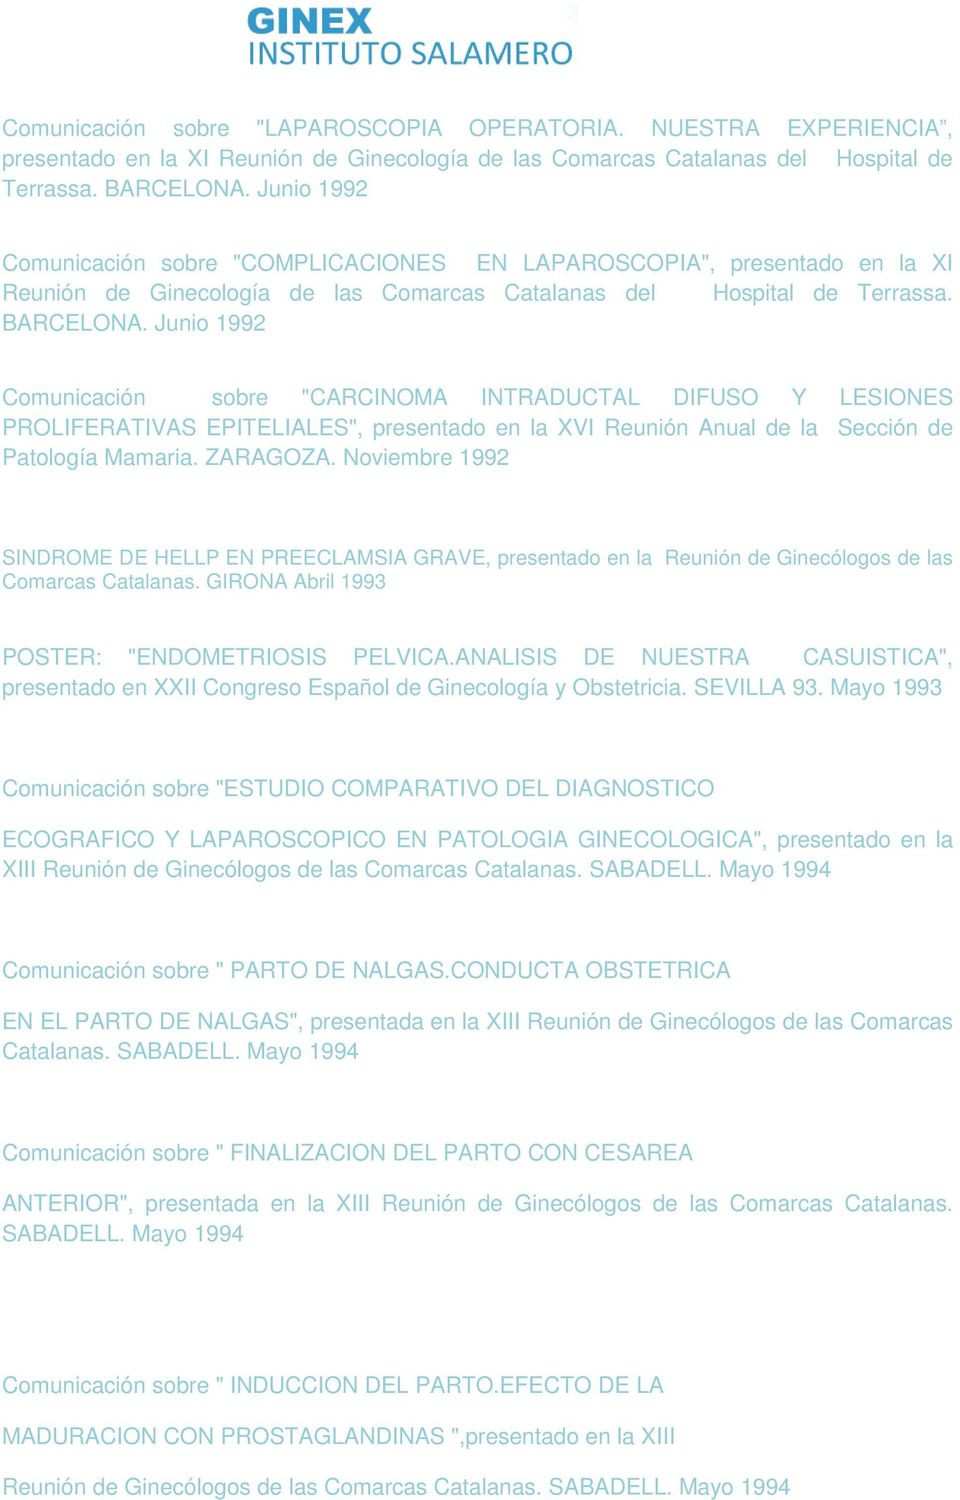 Junio 1992 Comunicación sobre "CARCINOMA INTRADUCTAL DIFUSO Y LESIONES PROLIFERATIVAS EPITELIALES", presentado en la XVI Reunión Anual de la Sección de Patología Mamaria. ZARAGOZA.